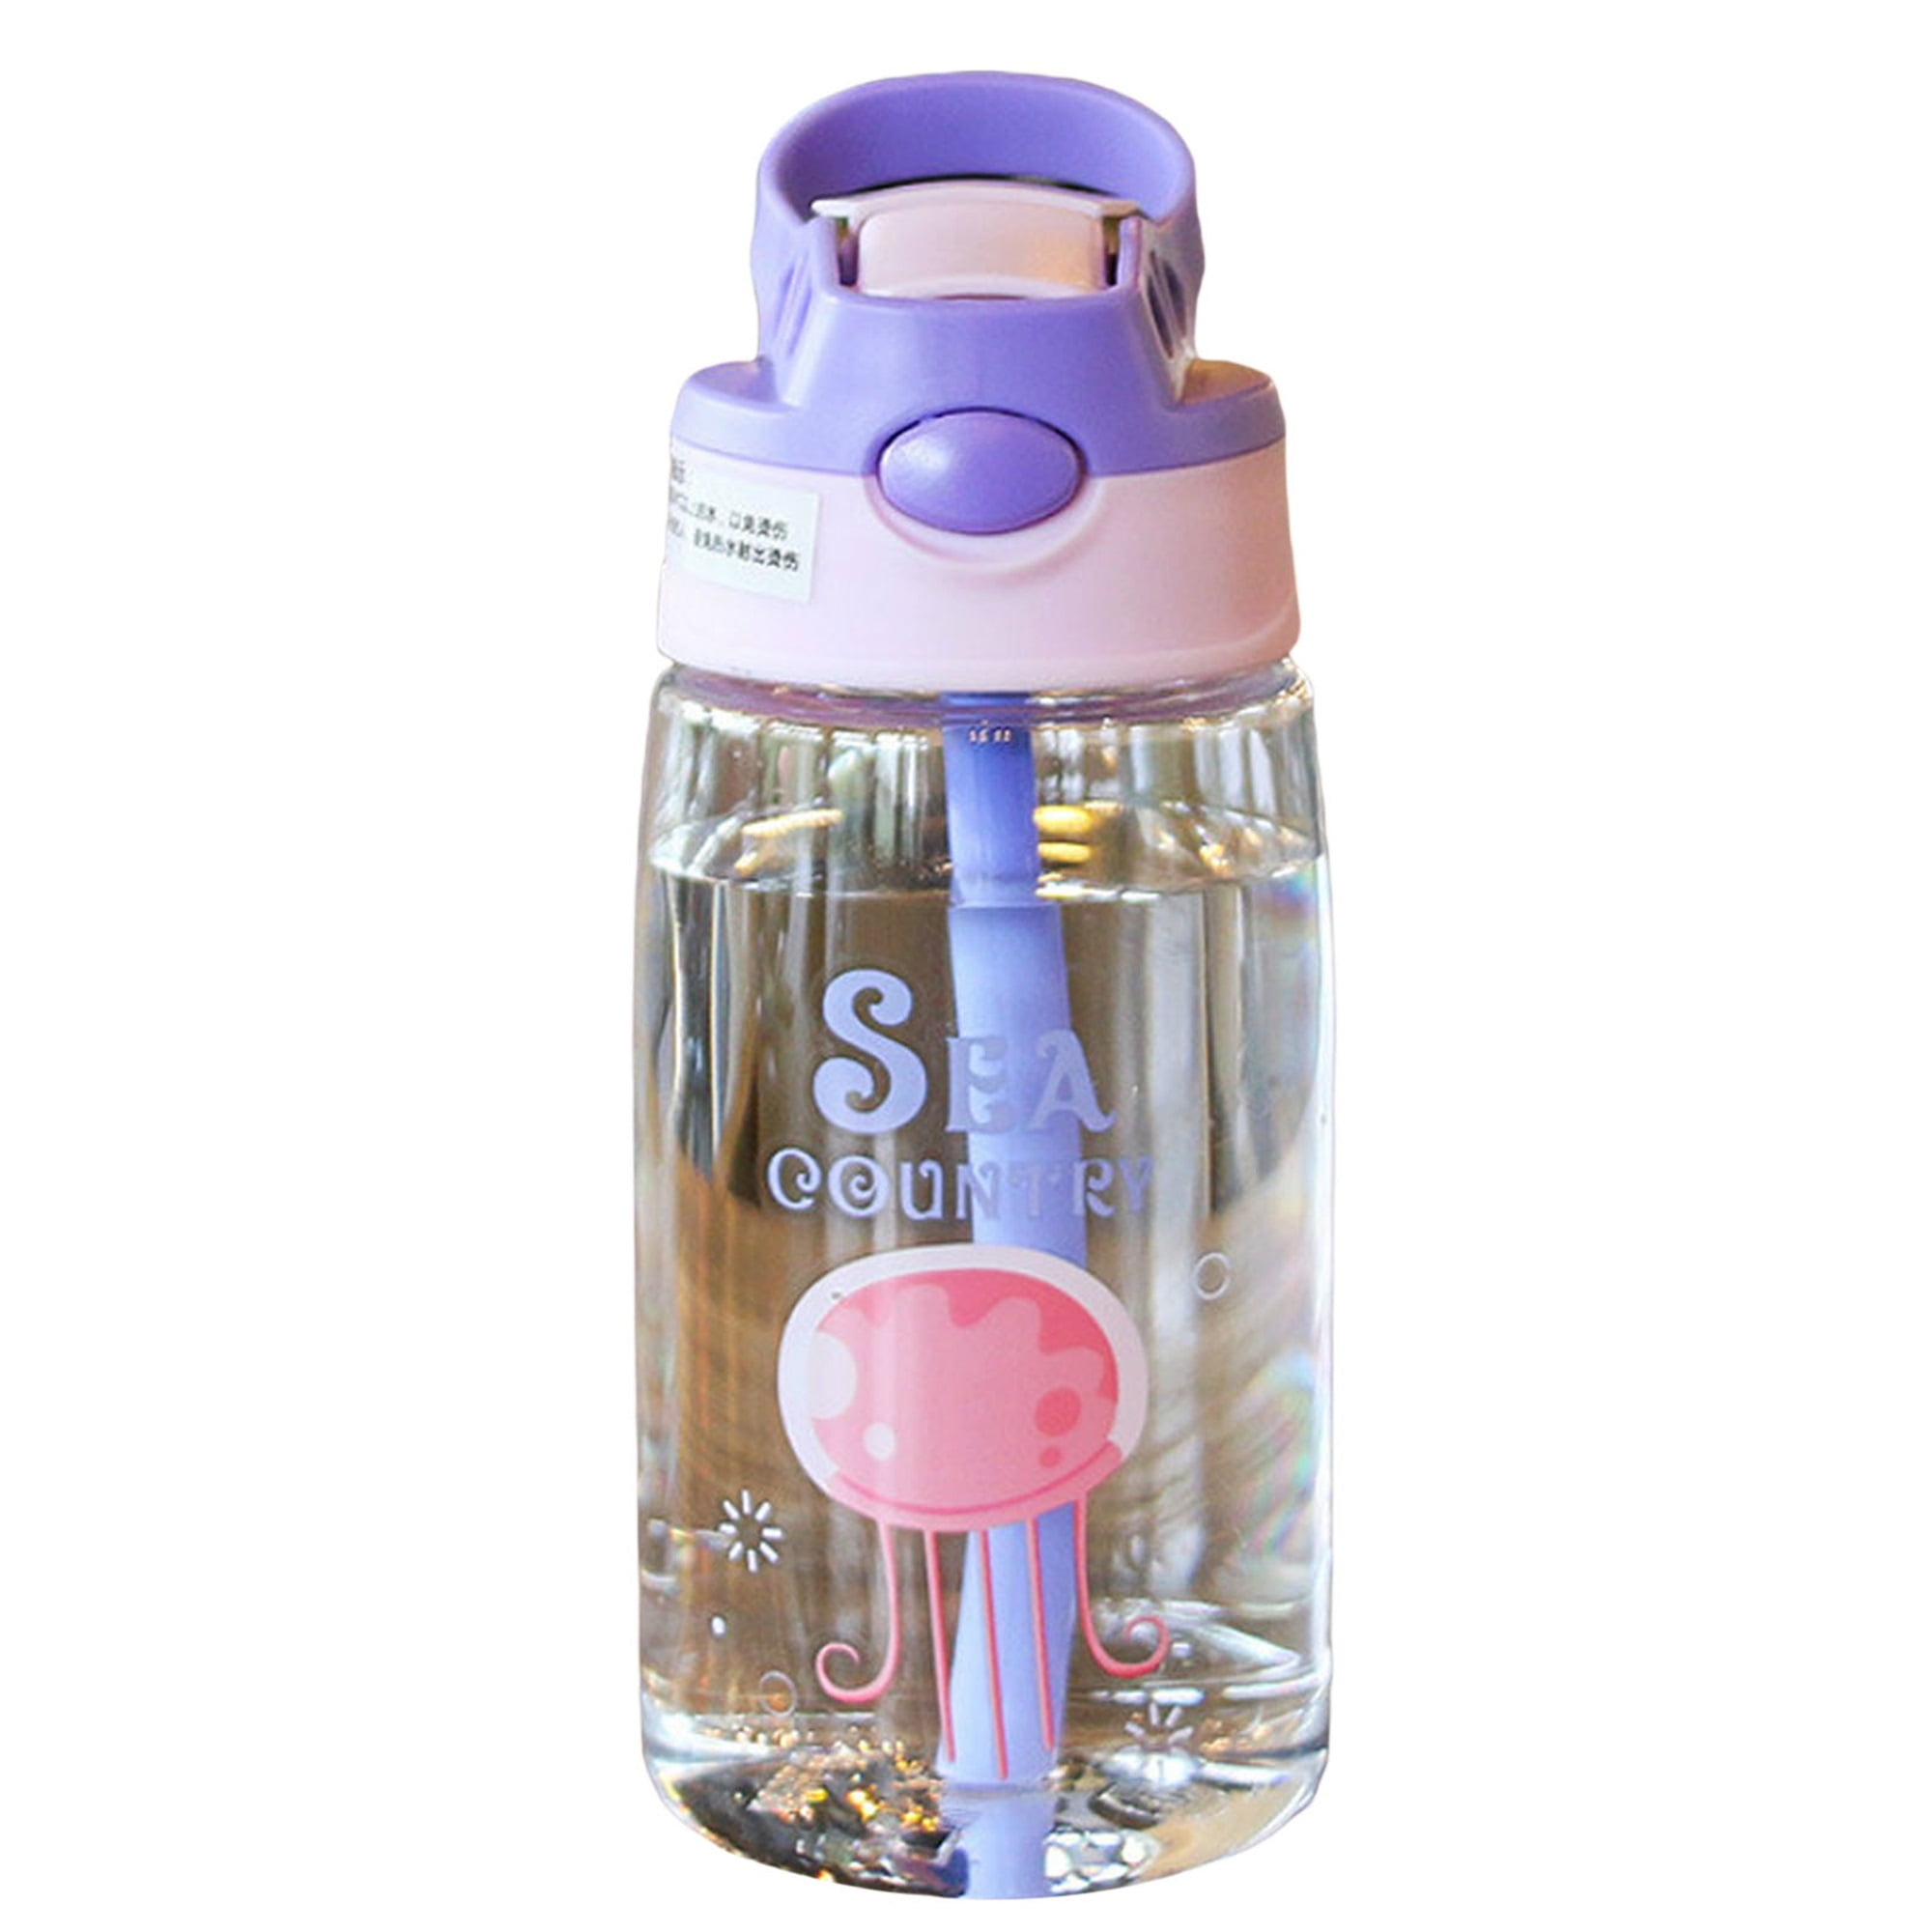 Busy Bugs Children's Water Bottle CLEARANCE Kids Drinks Bottle 